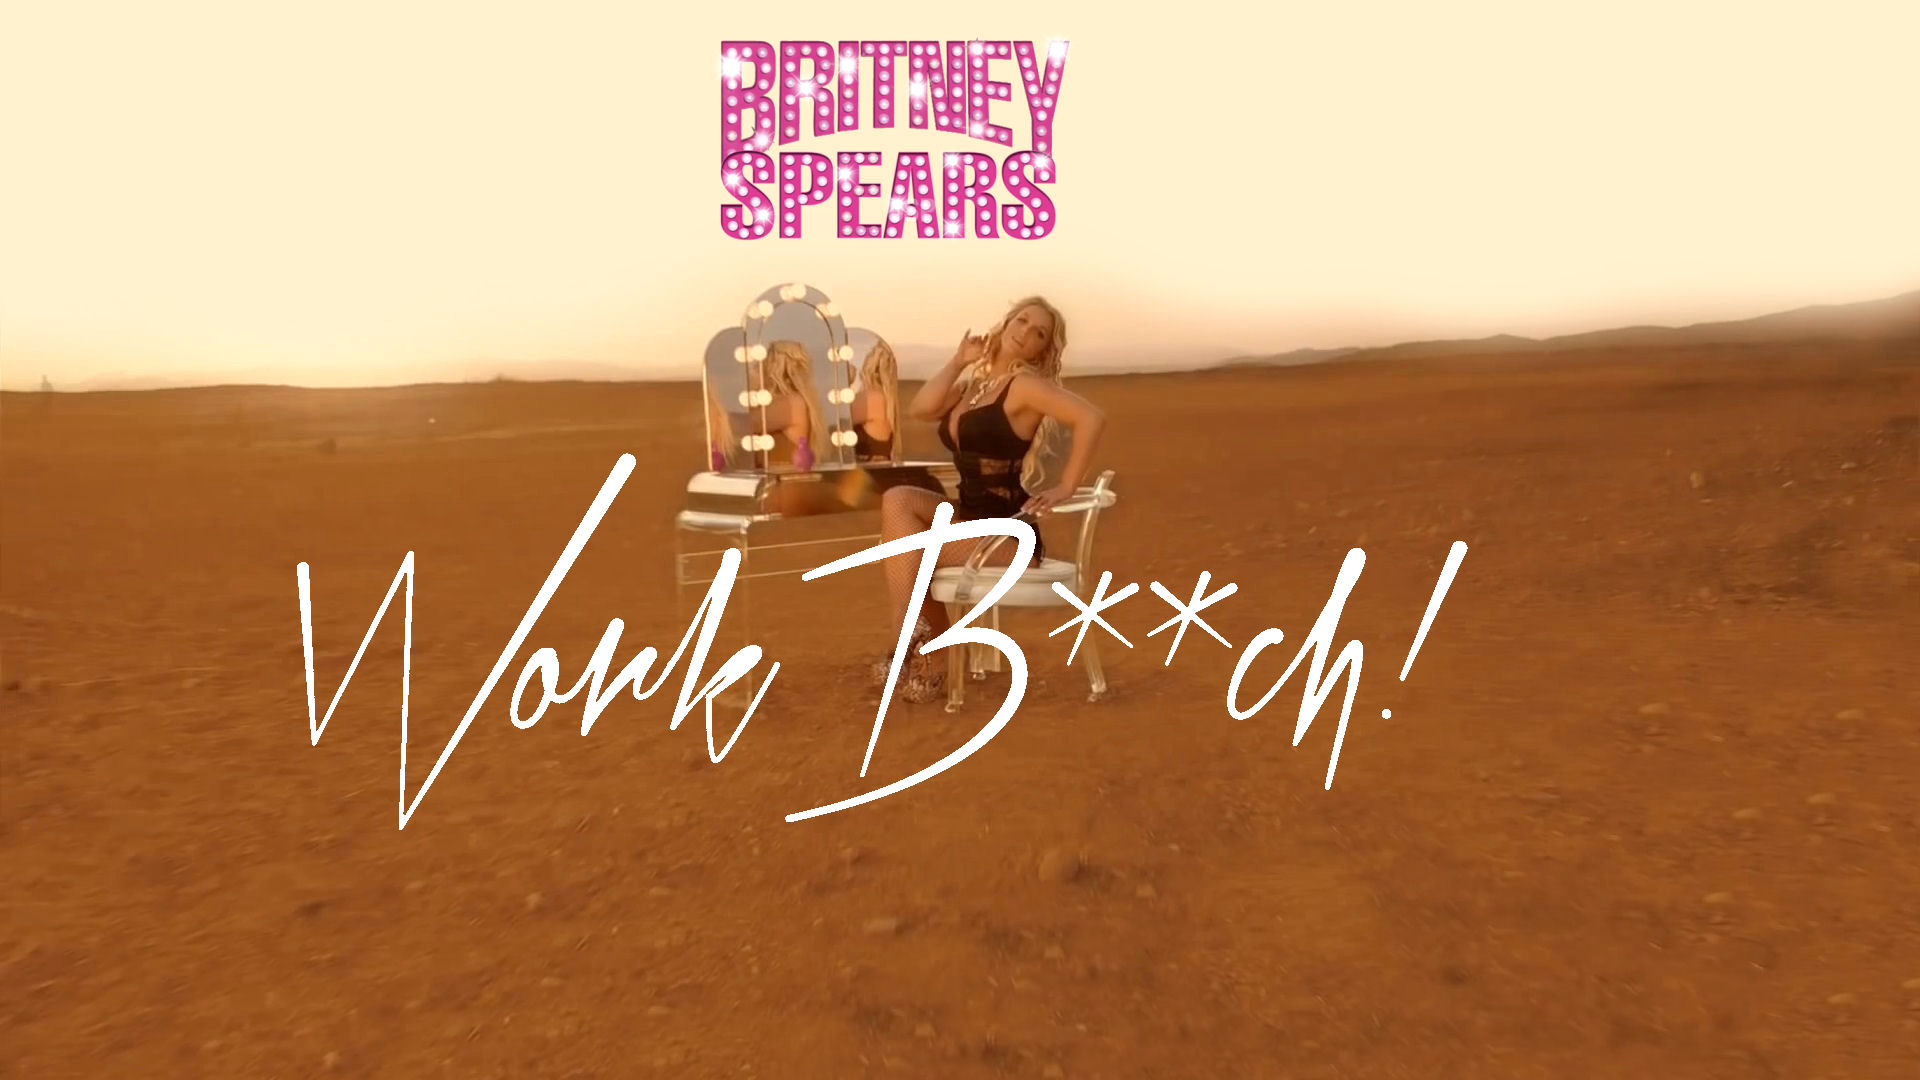 Britney Spears Work B**ch ! Censored  Britney Spears Wallpaper 37179149  Fanpop